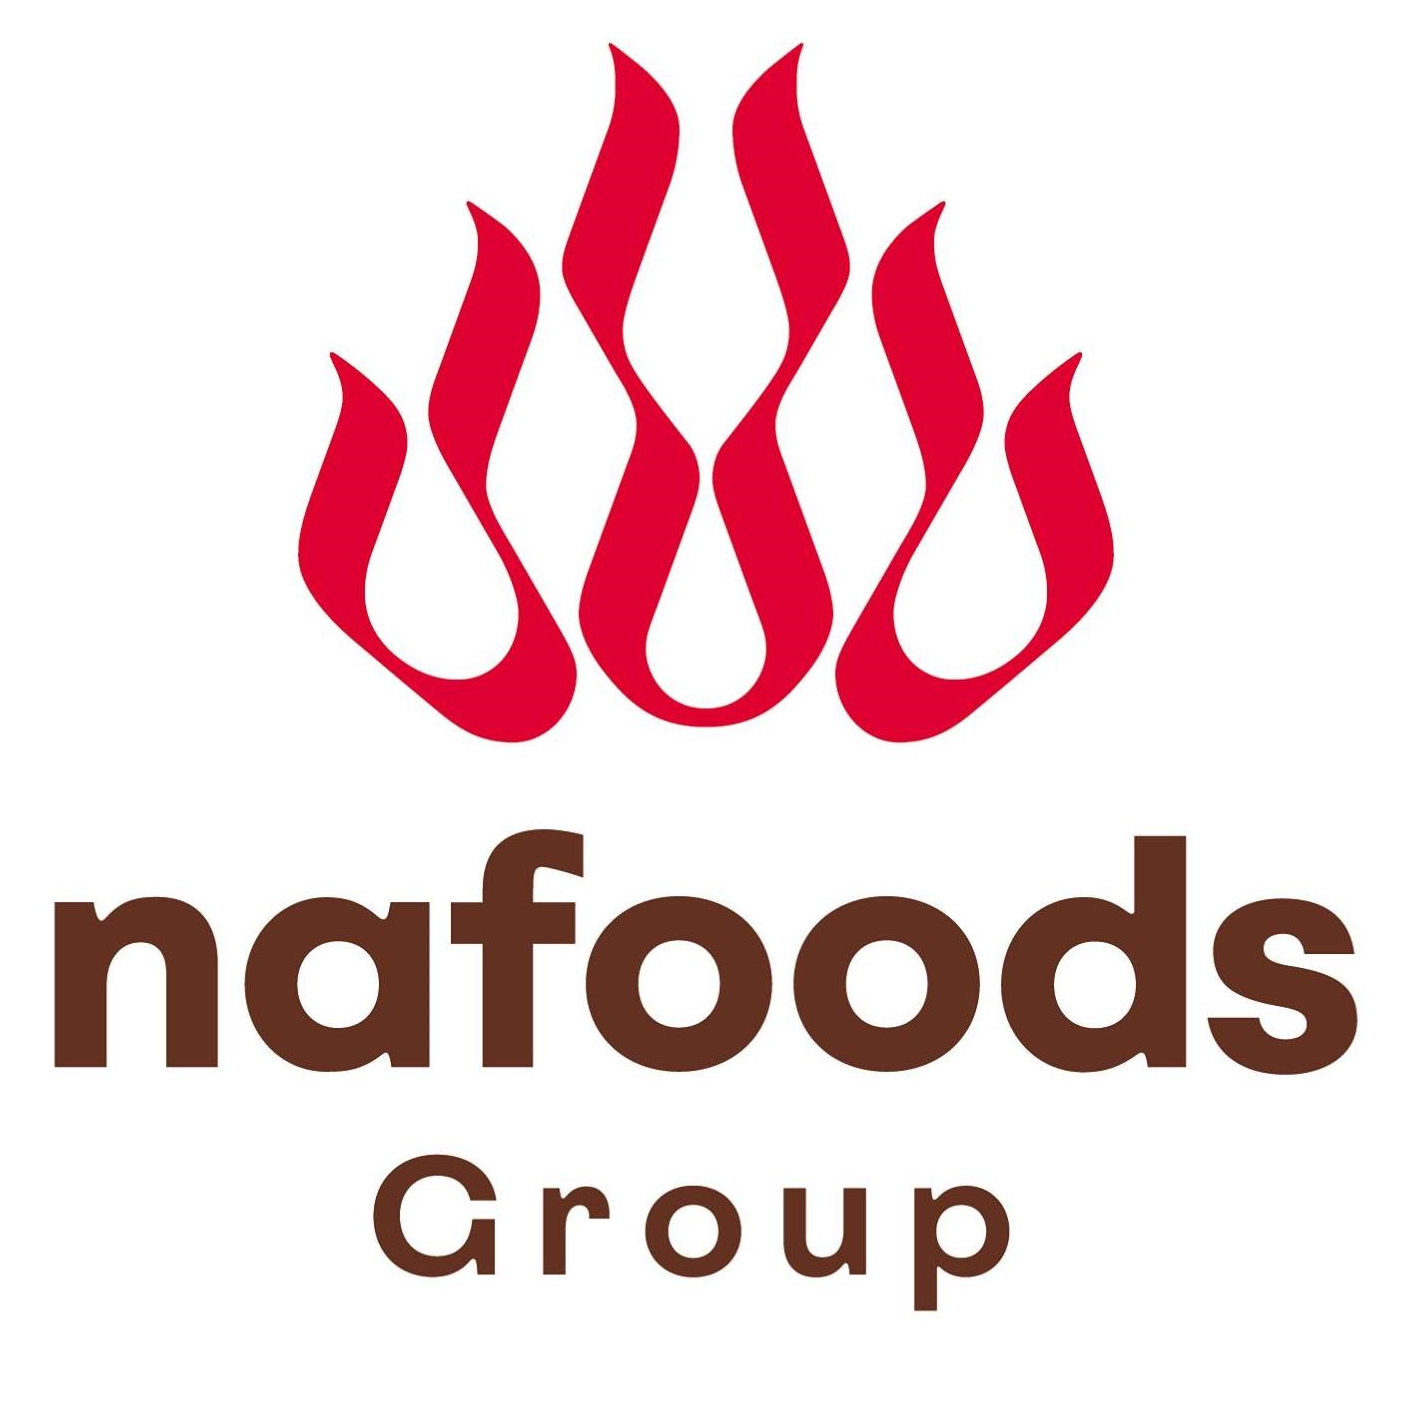 Logo Văn phòng đại diện Công ty CP Nafoods Group tại Thành phố Hồ Chí Minh